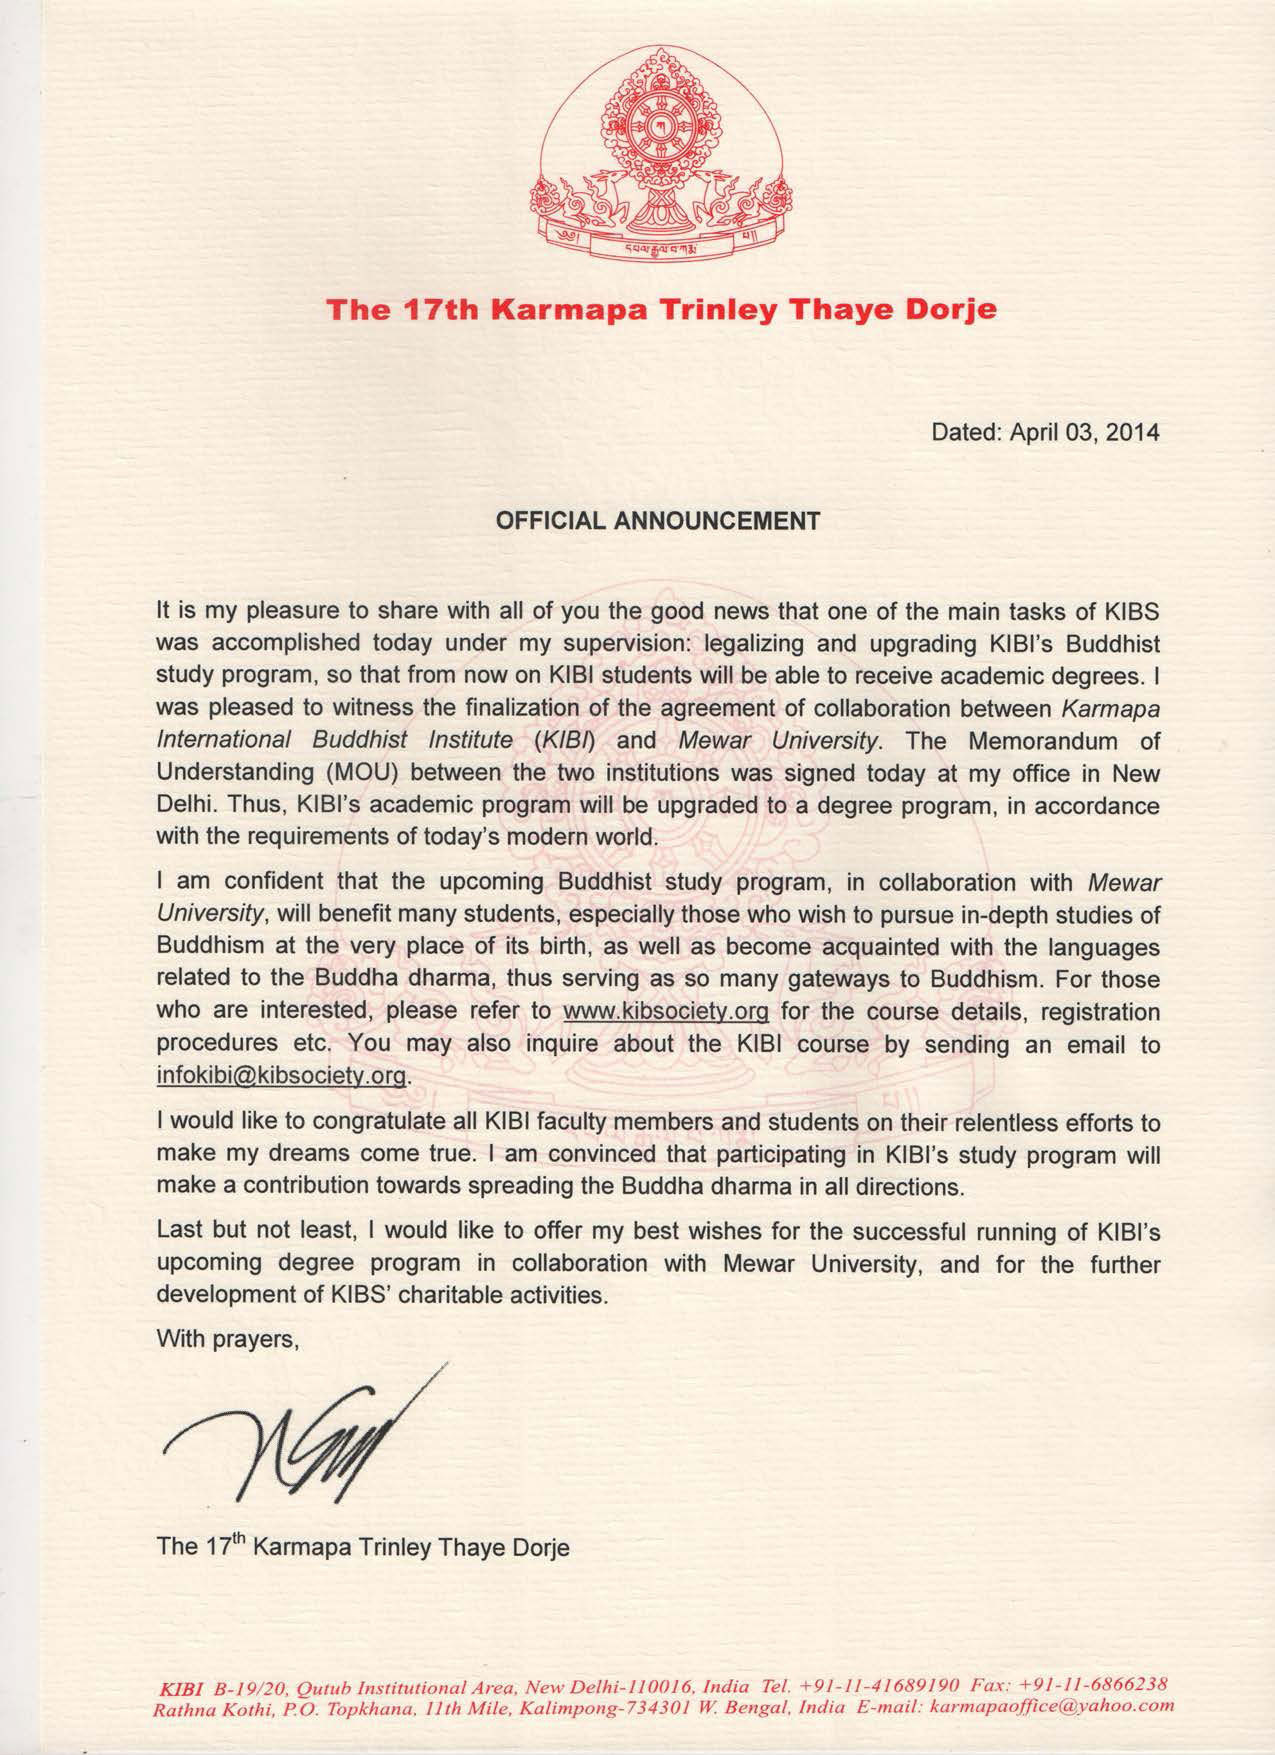 Nachricht von HH Gyalwa Karmapa über buddhistische Studienprogramm des KIBI